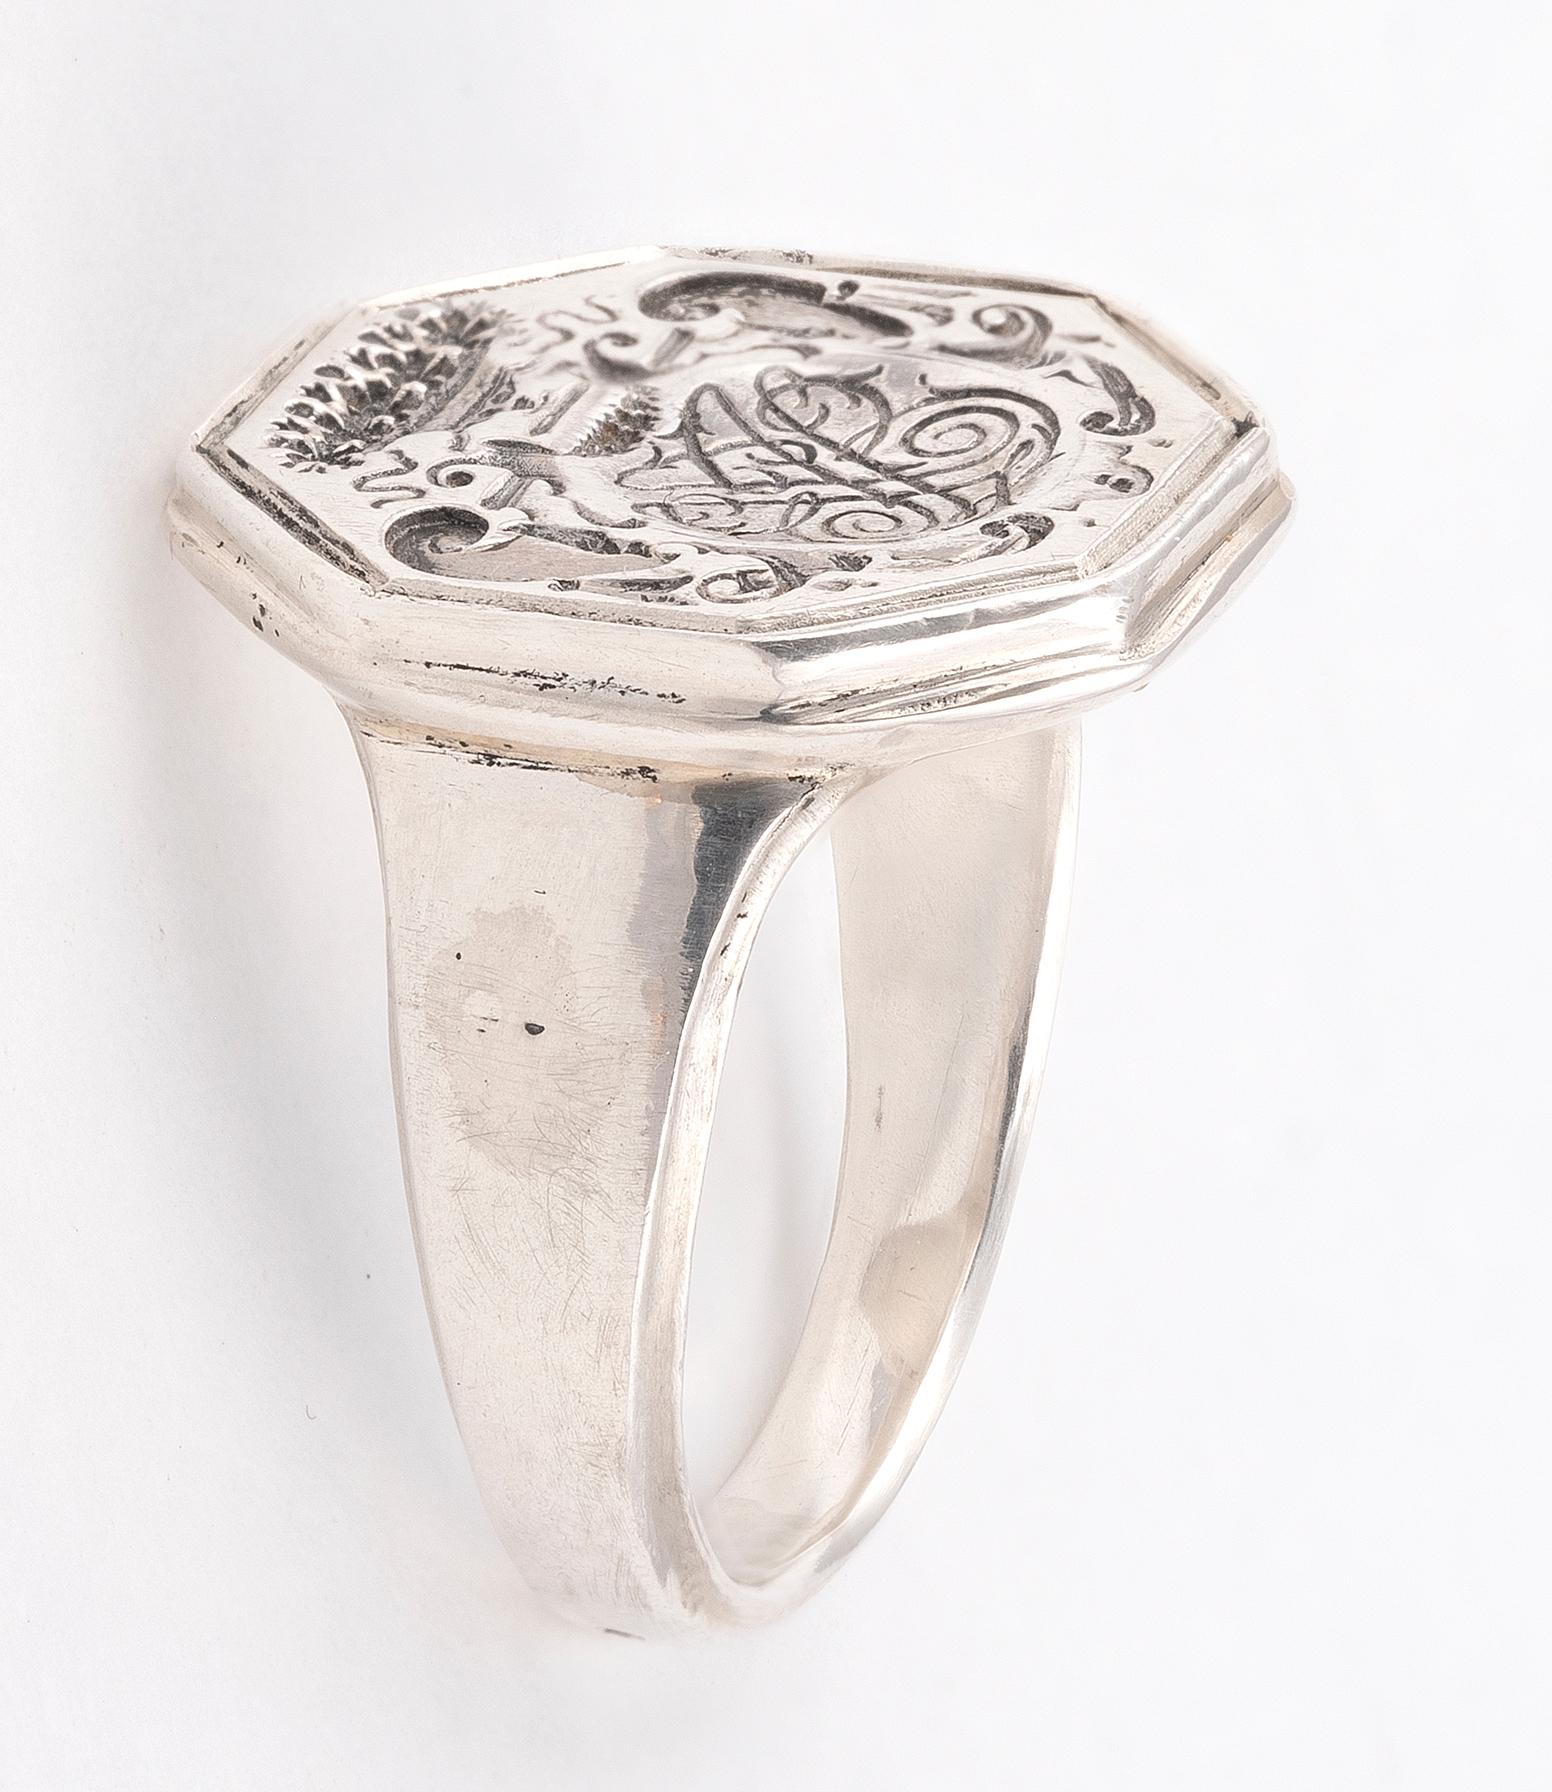 18th century rings